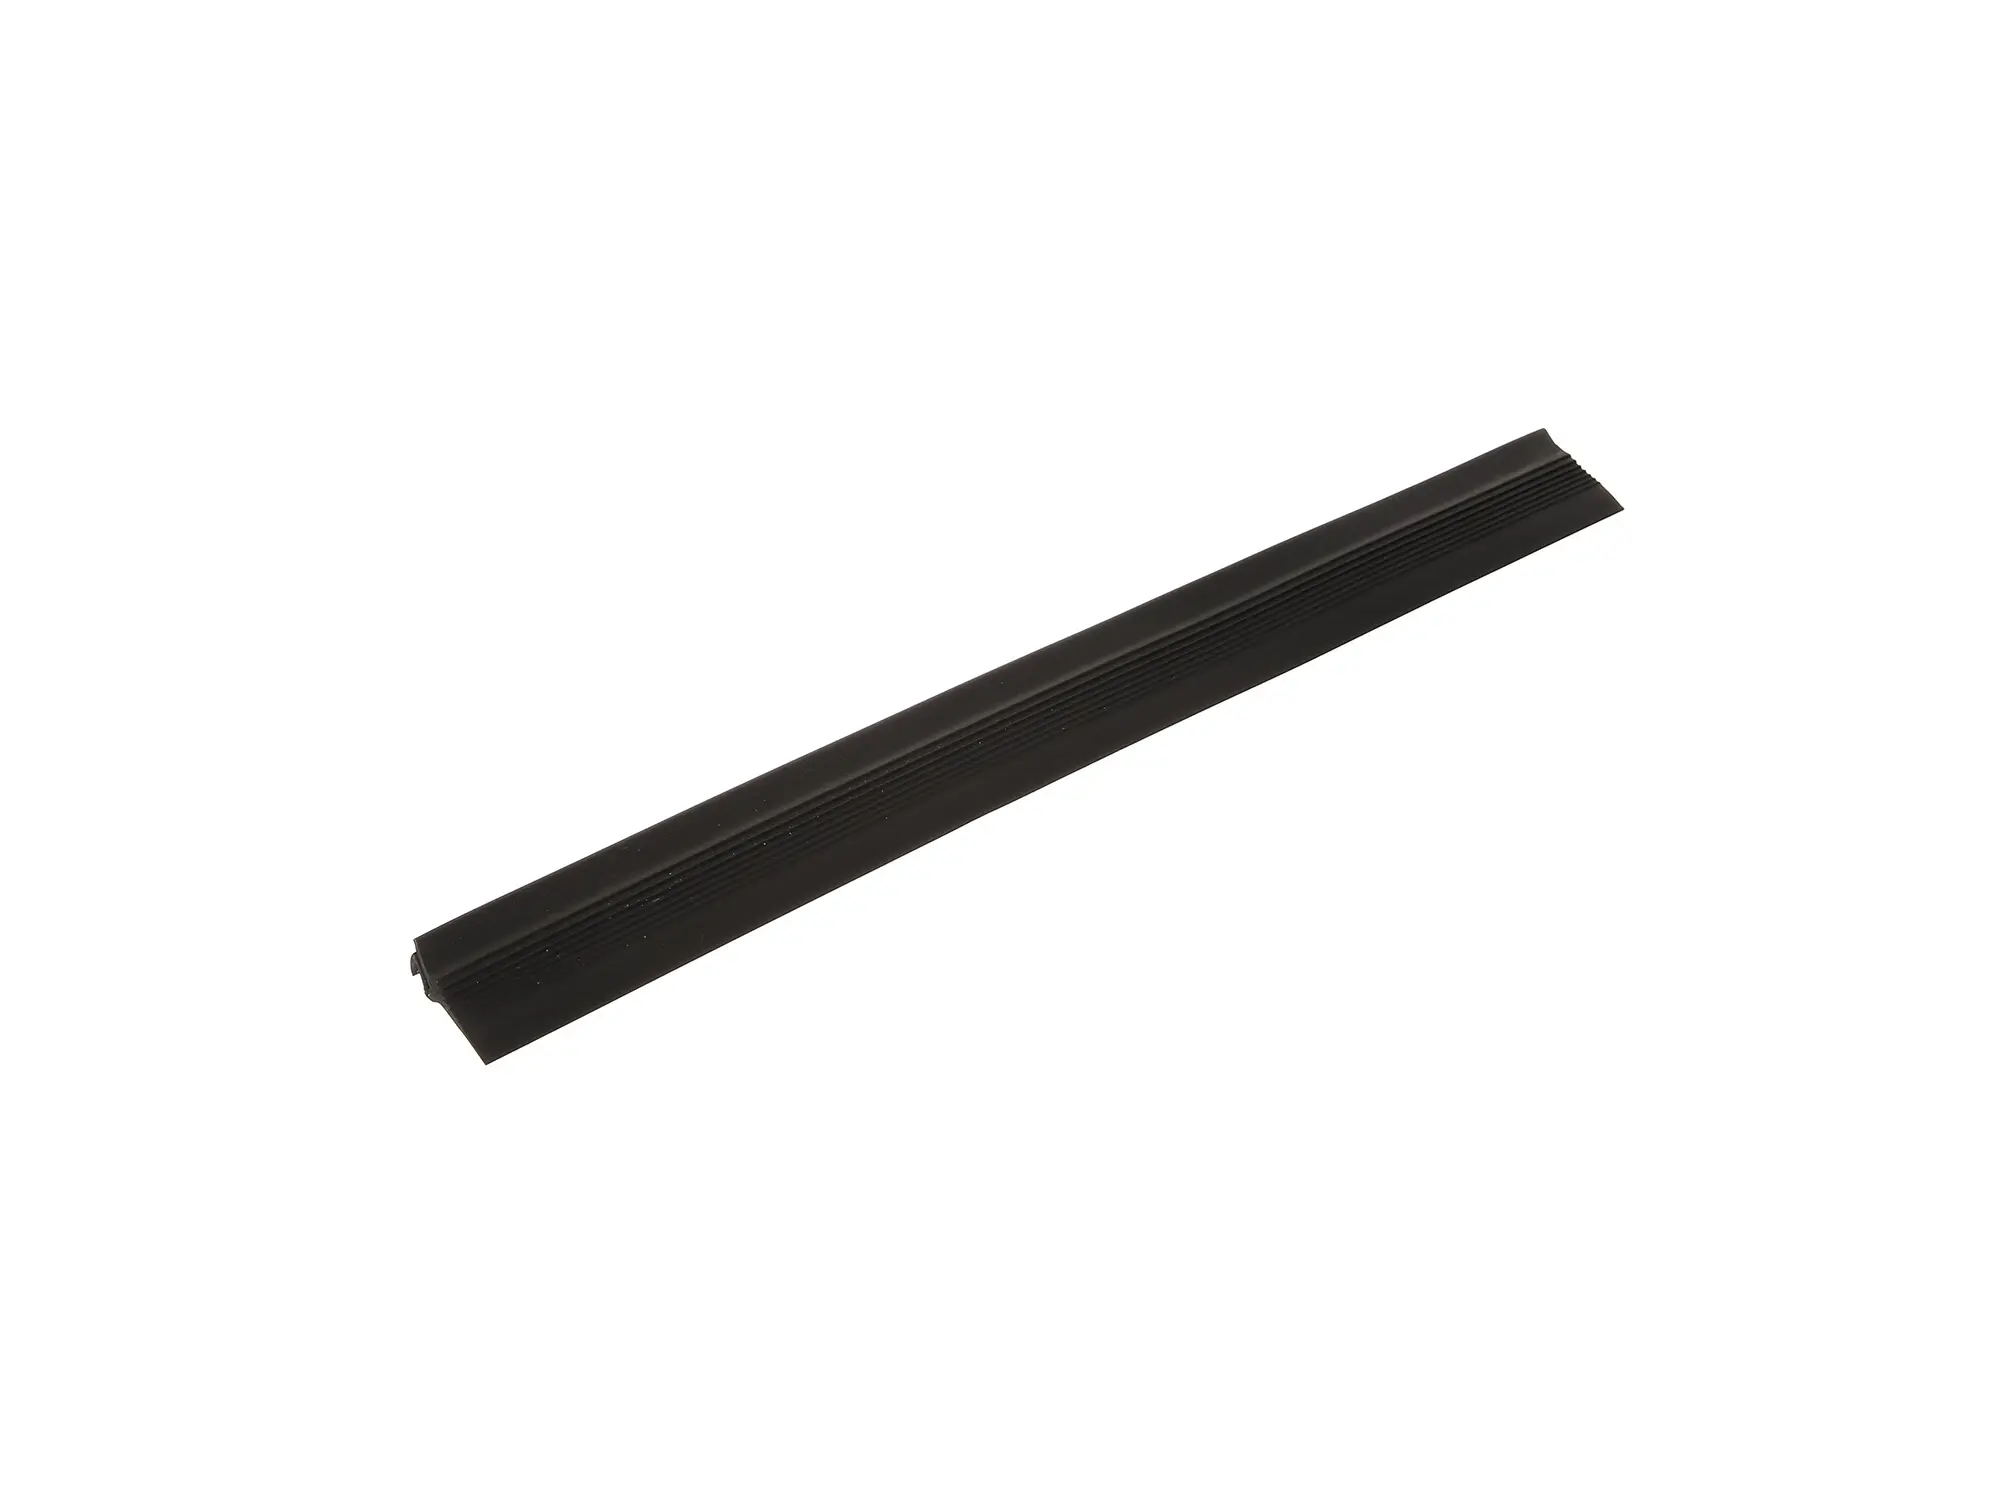 Gummikeder, schwarz (0,3 Meter) für Scheinwerfer-Kraftstofftank bei ES175/2, ES250/2, Art.-Nr.: 10064002 - Bild 1